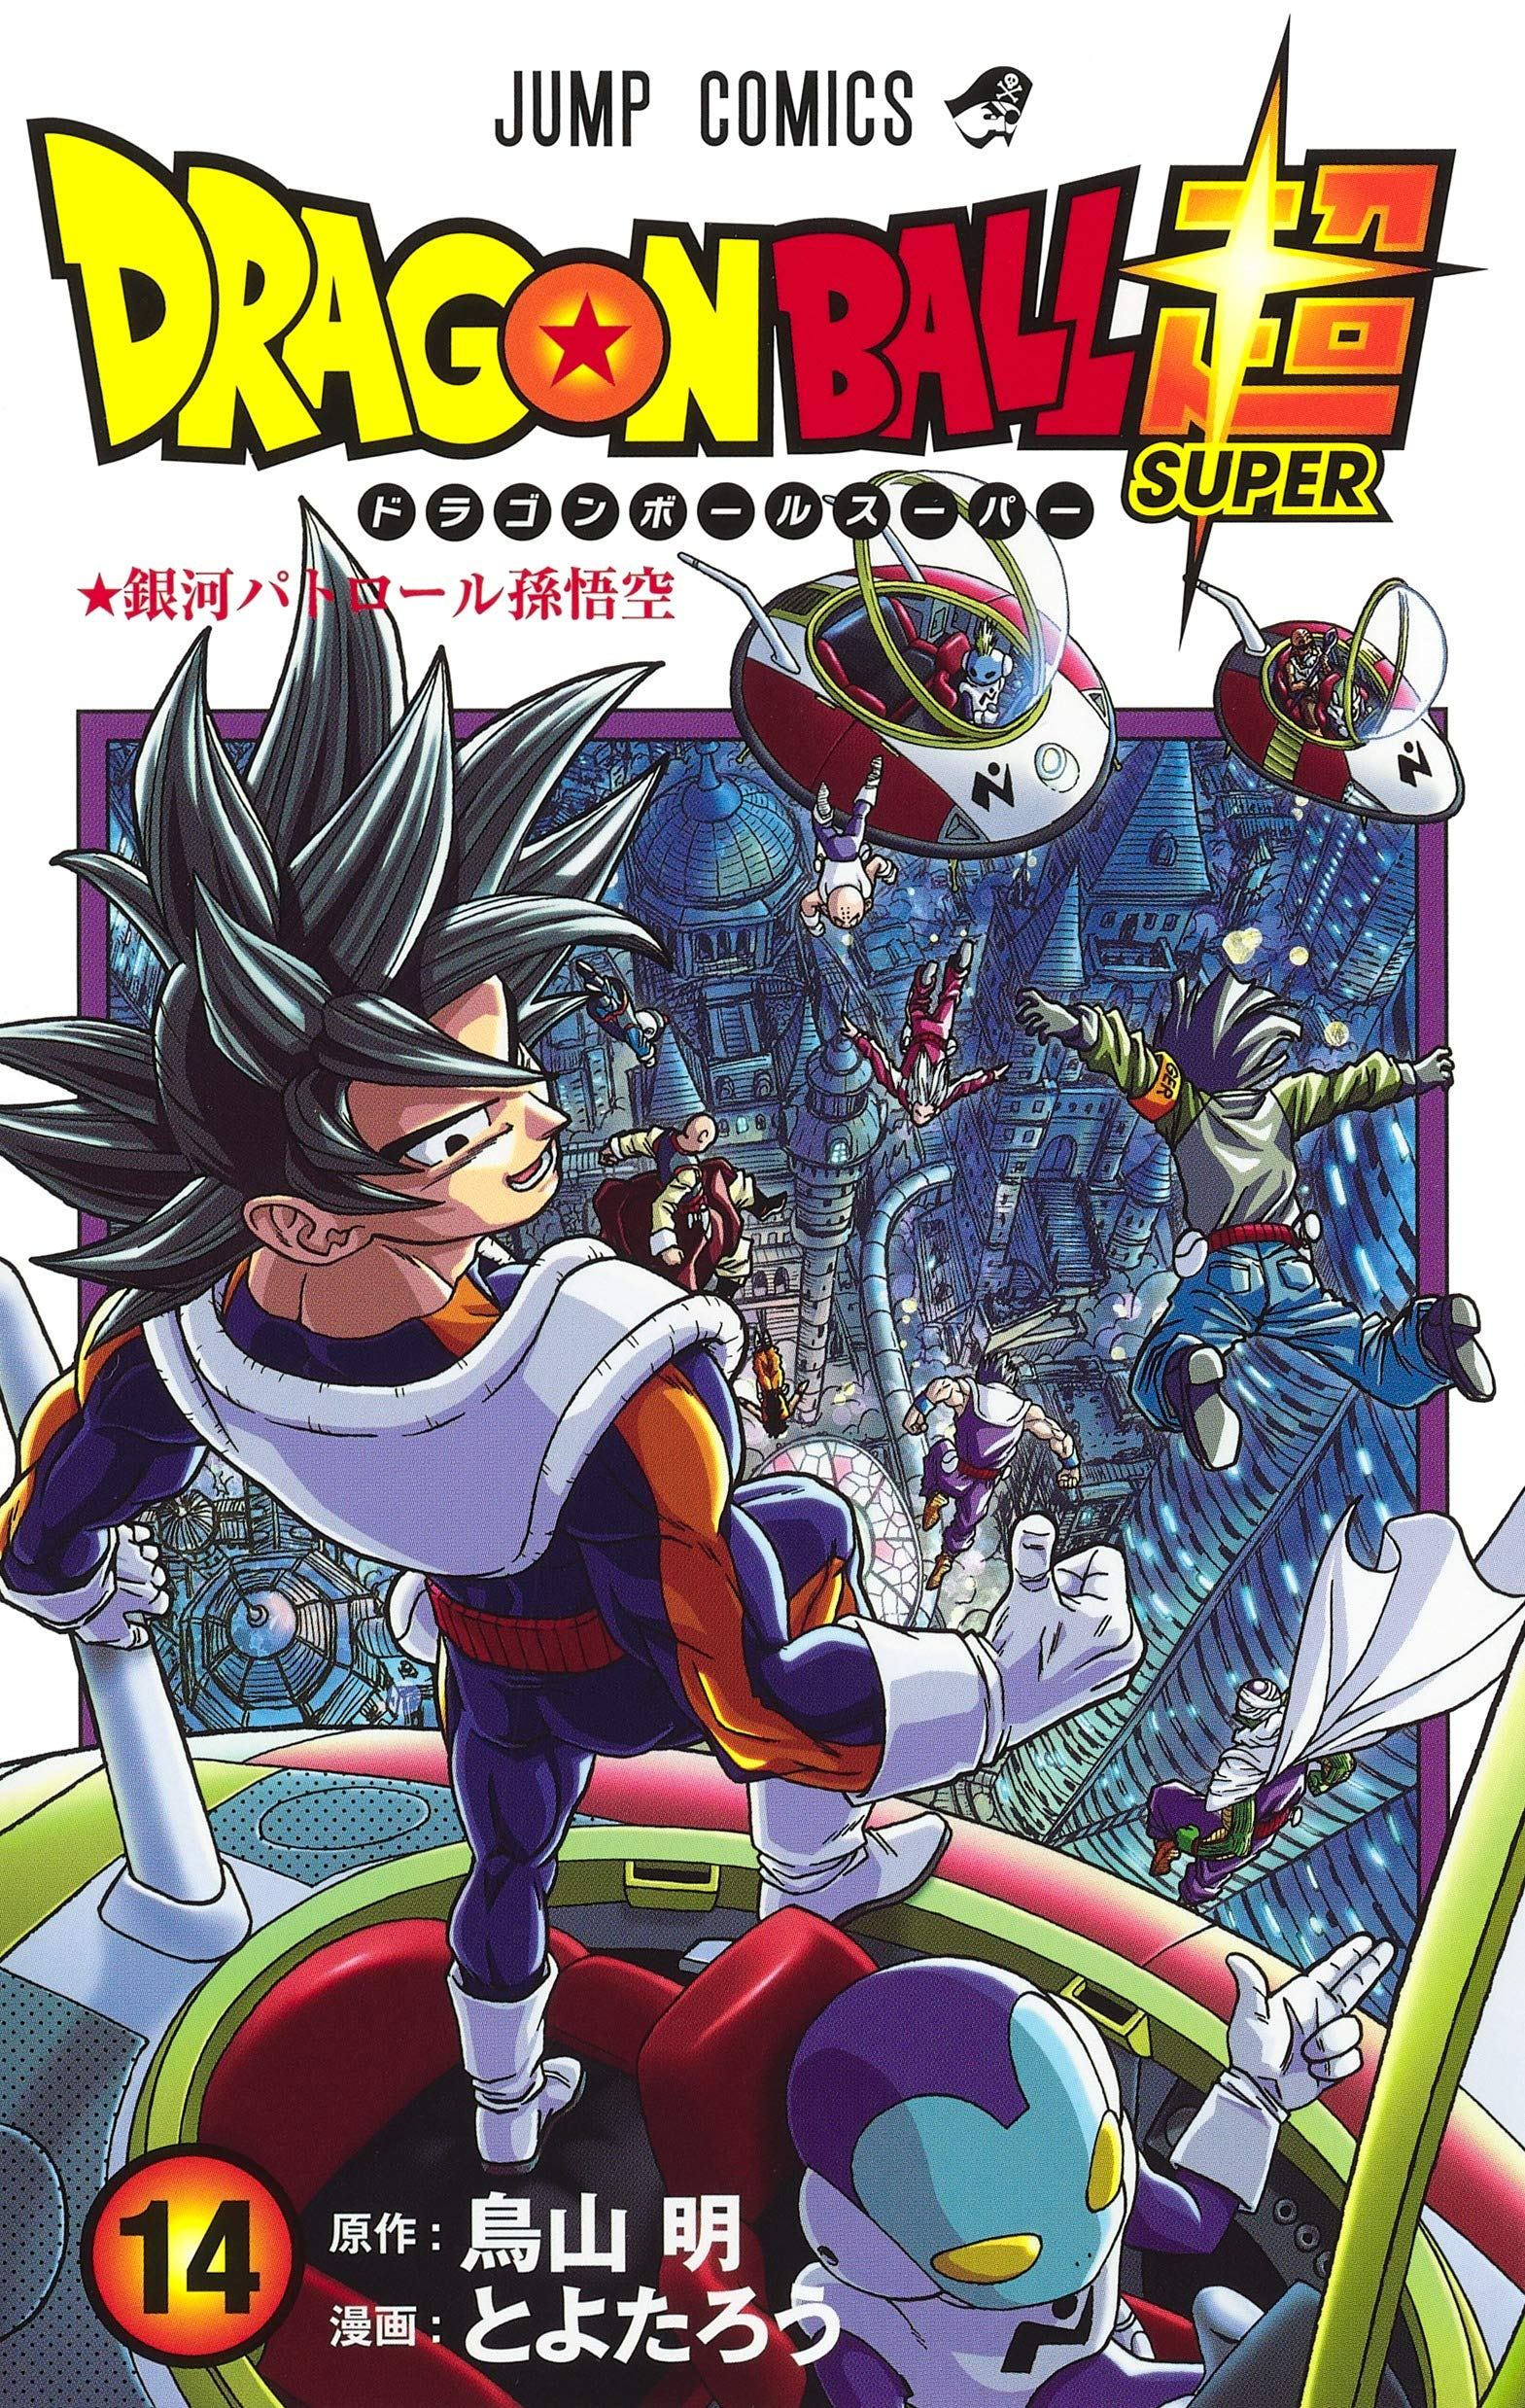 Dragon Ball Comic Books in Manga 